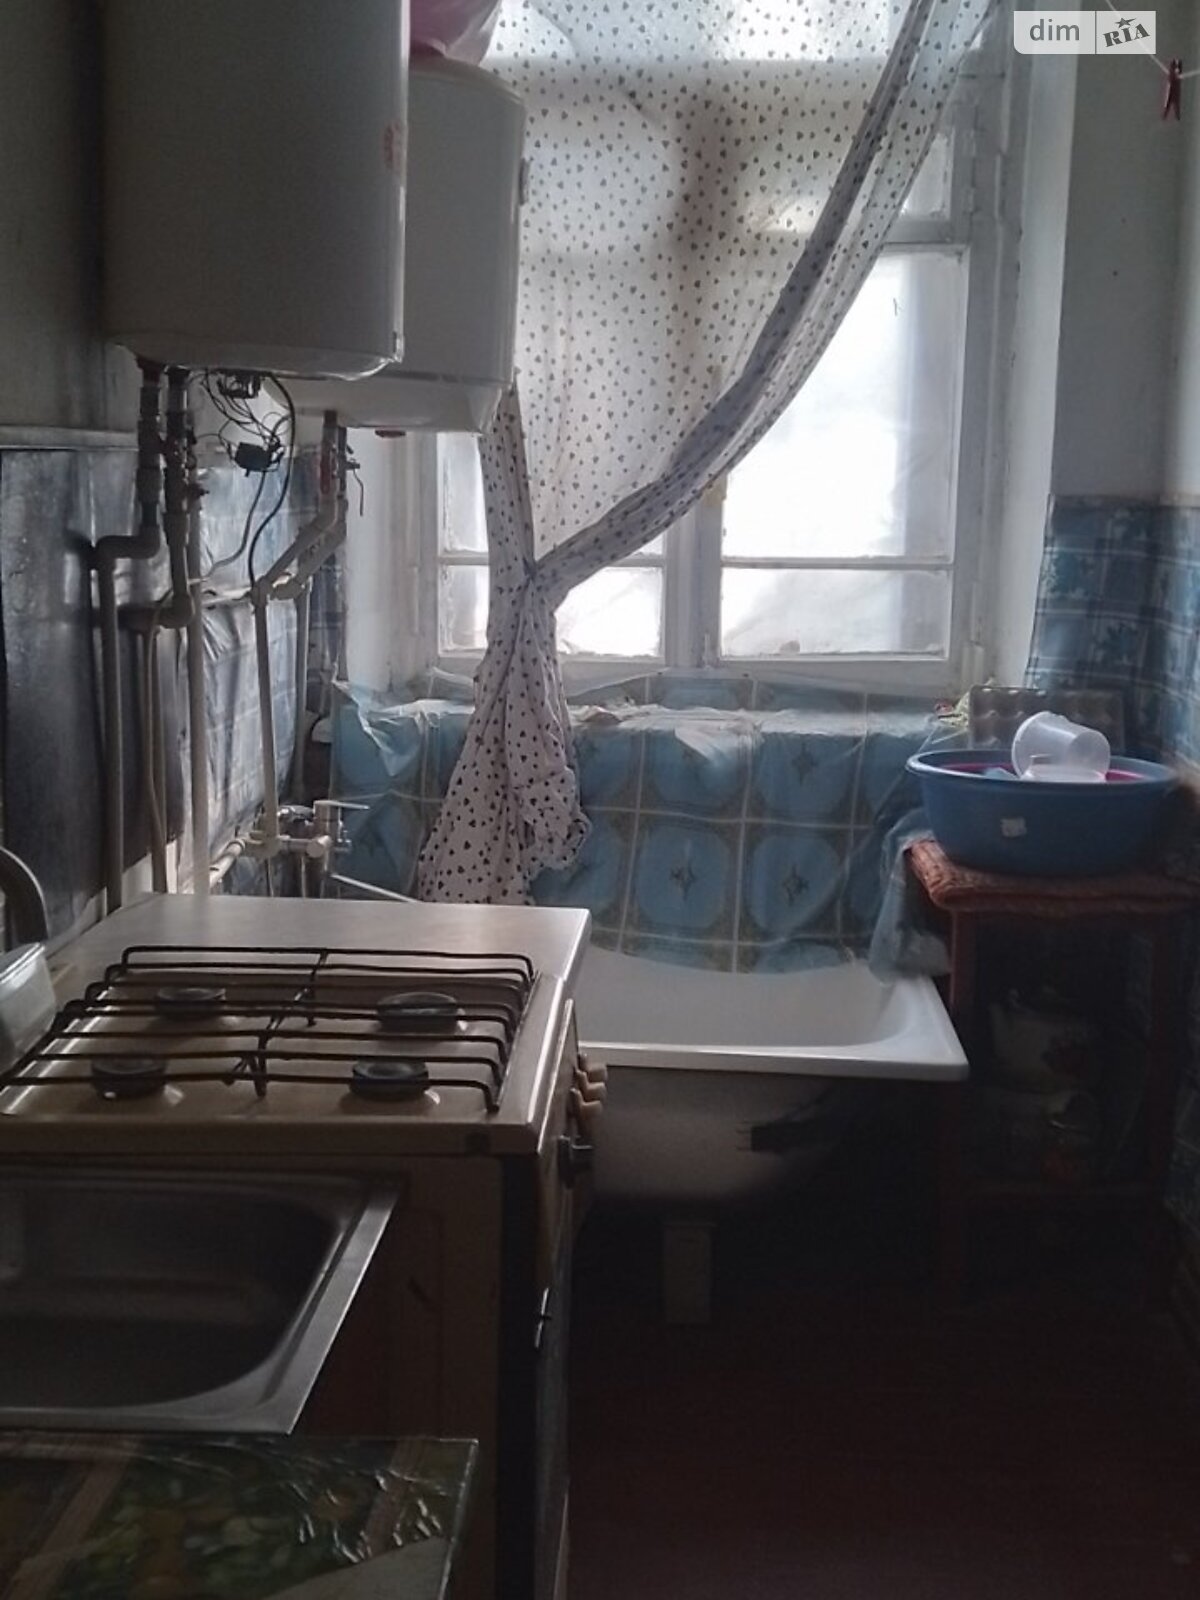 Комната в Харькове, на ул. Андреевская 41 в районе Лысая Гора на продажу фото 1